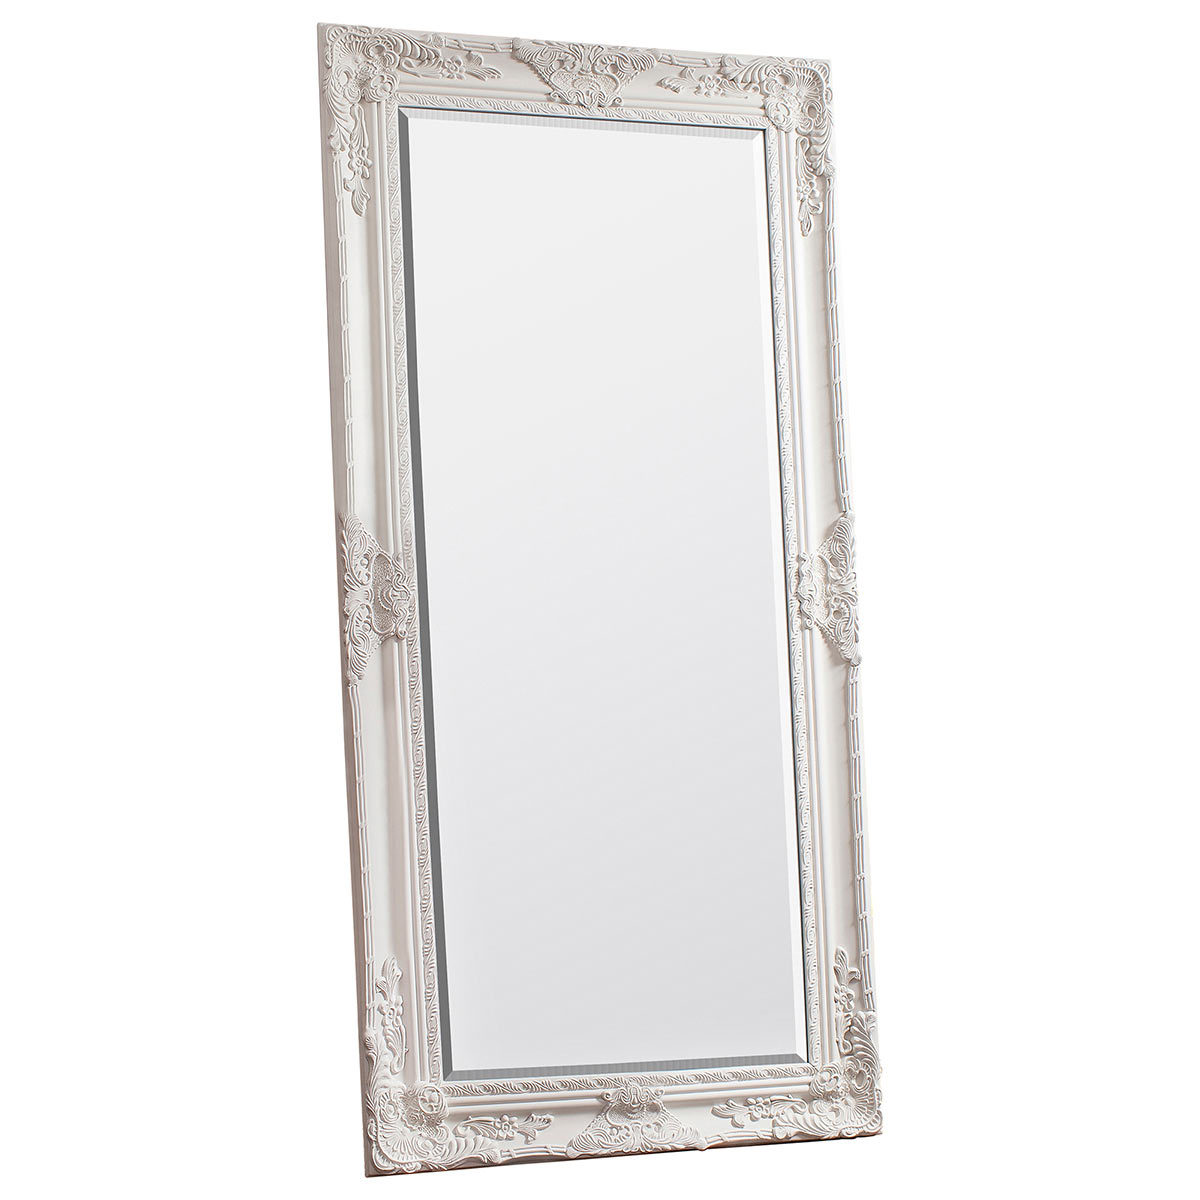 Gallery Hampshire Cream Leaner Mirror, 84 x 170cm